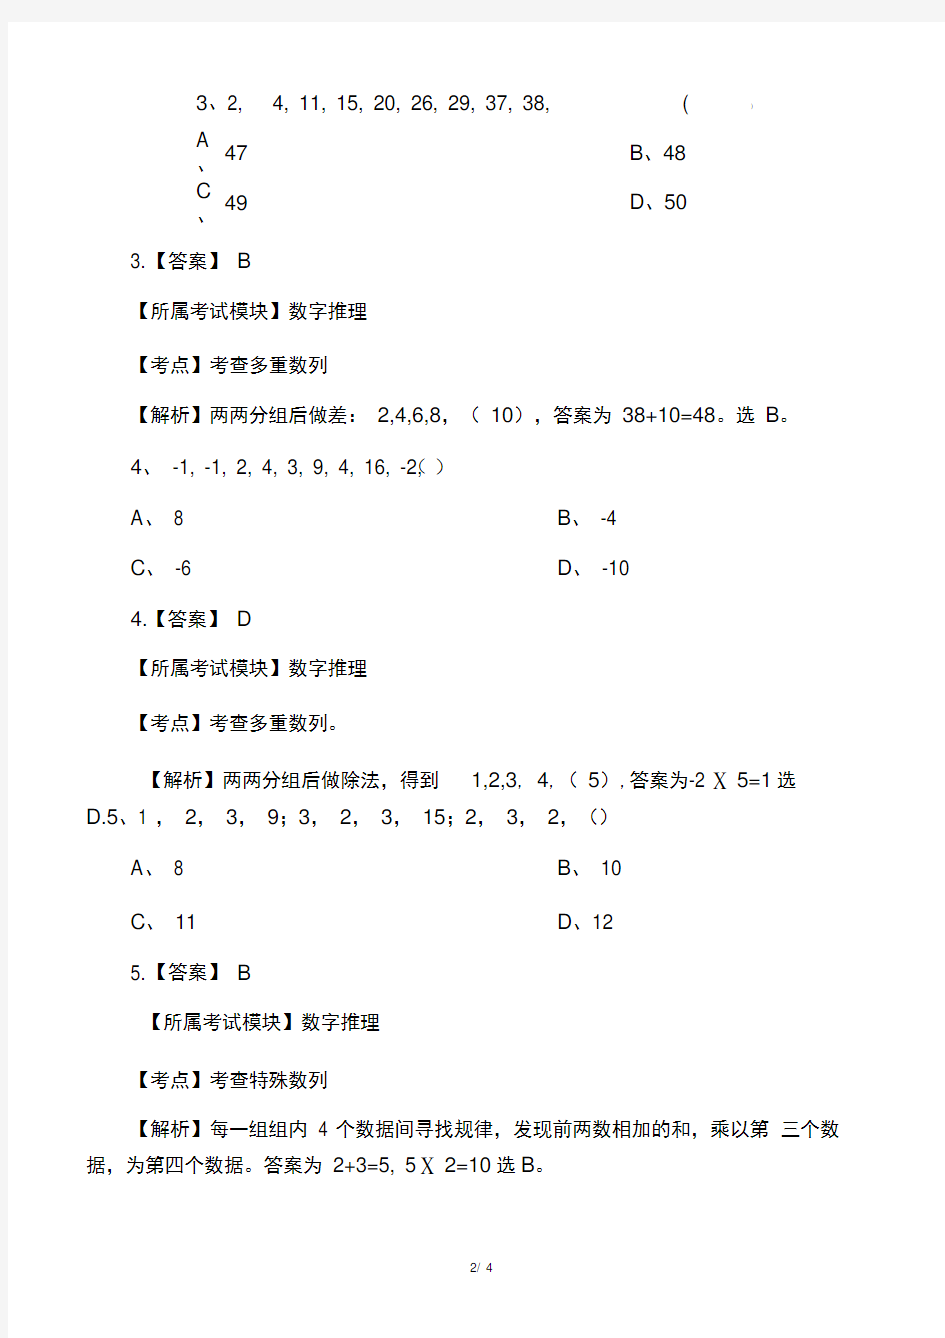 上海事业单位考试真题及解析(14年真题)